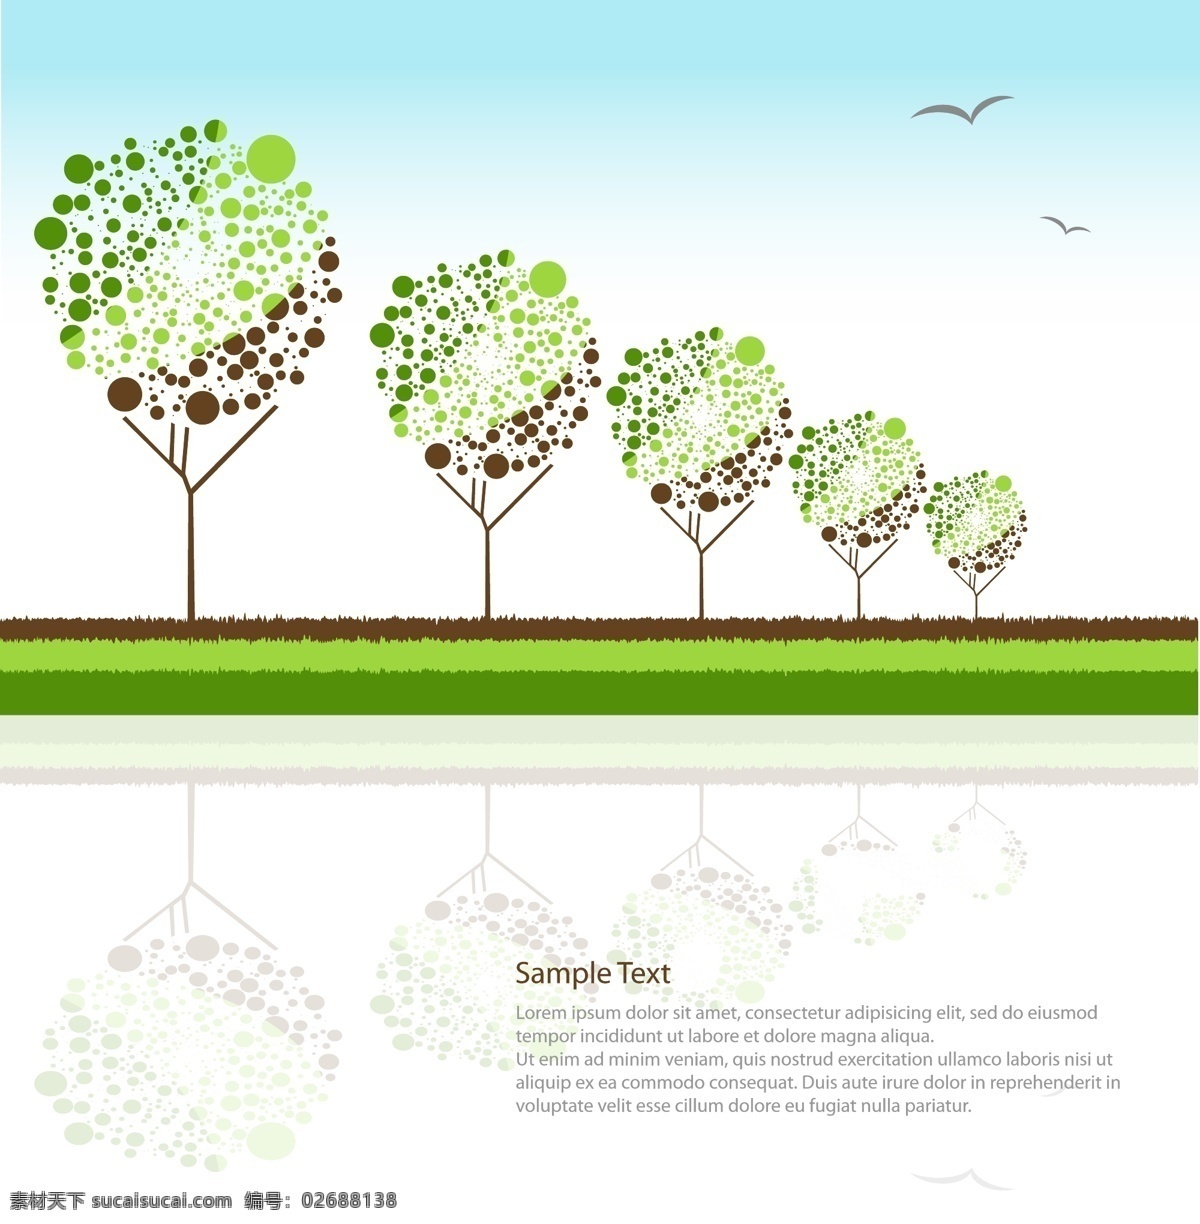 矢量 卡通 树木 版式 版式设计 卡通树木 矢量素材 英文版式 海报 其他海报设计